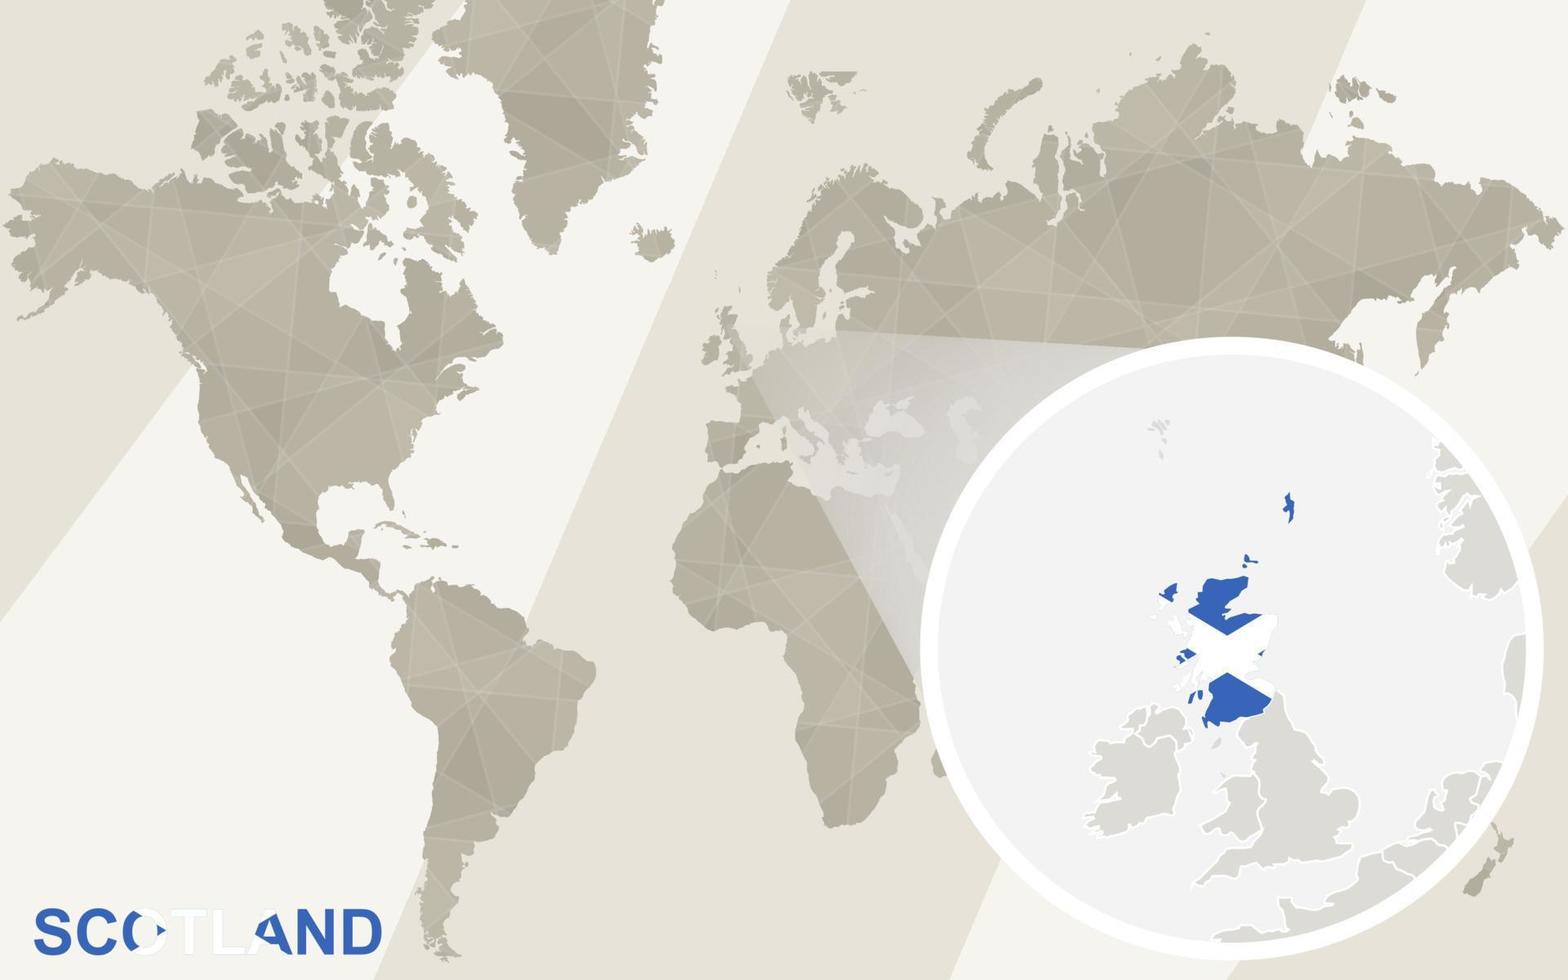 Zoom en el mapa y la bandera de Escocia. mapa del mundo. vector